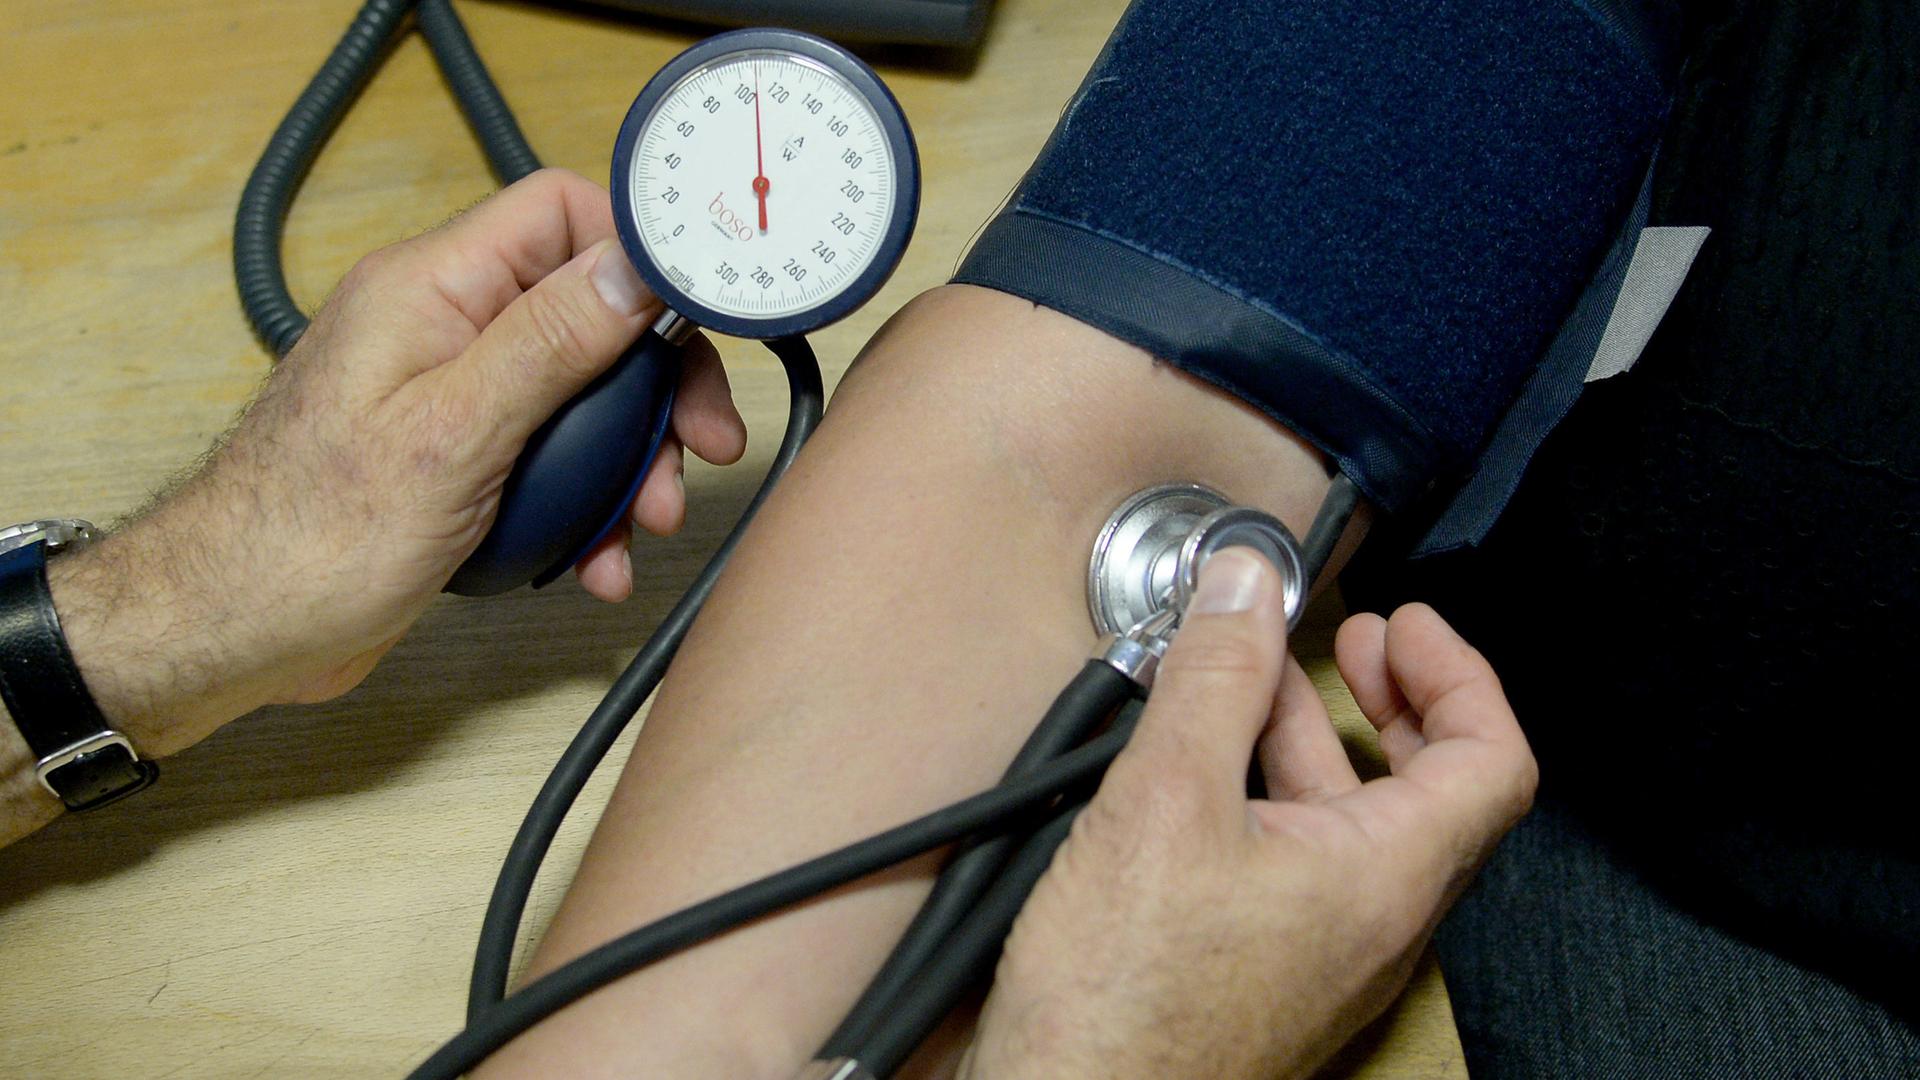 Am Arm einer Patientin wird der Blutdruck gemessen. Der Arm ist von einer Manschette umschlossen.